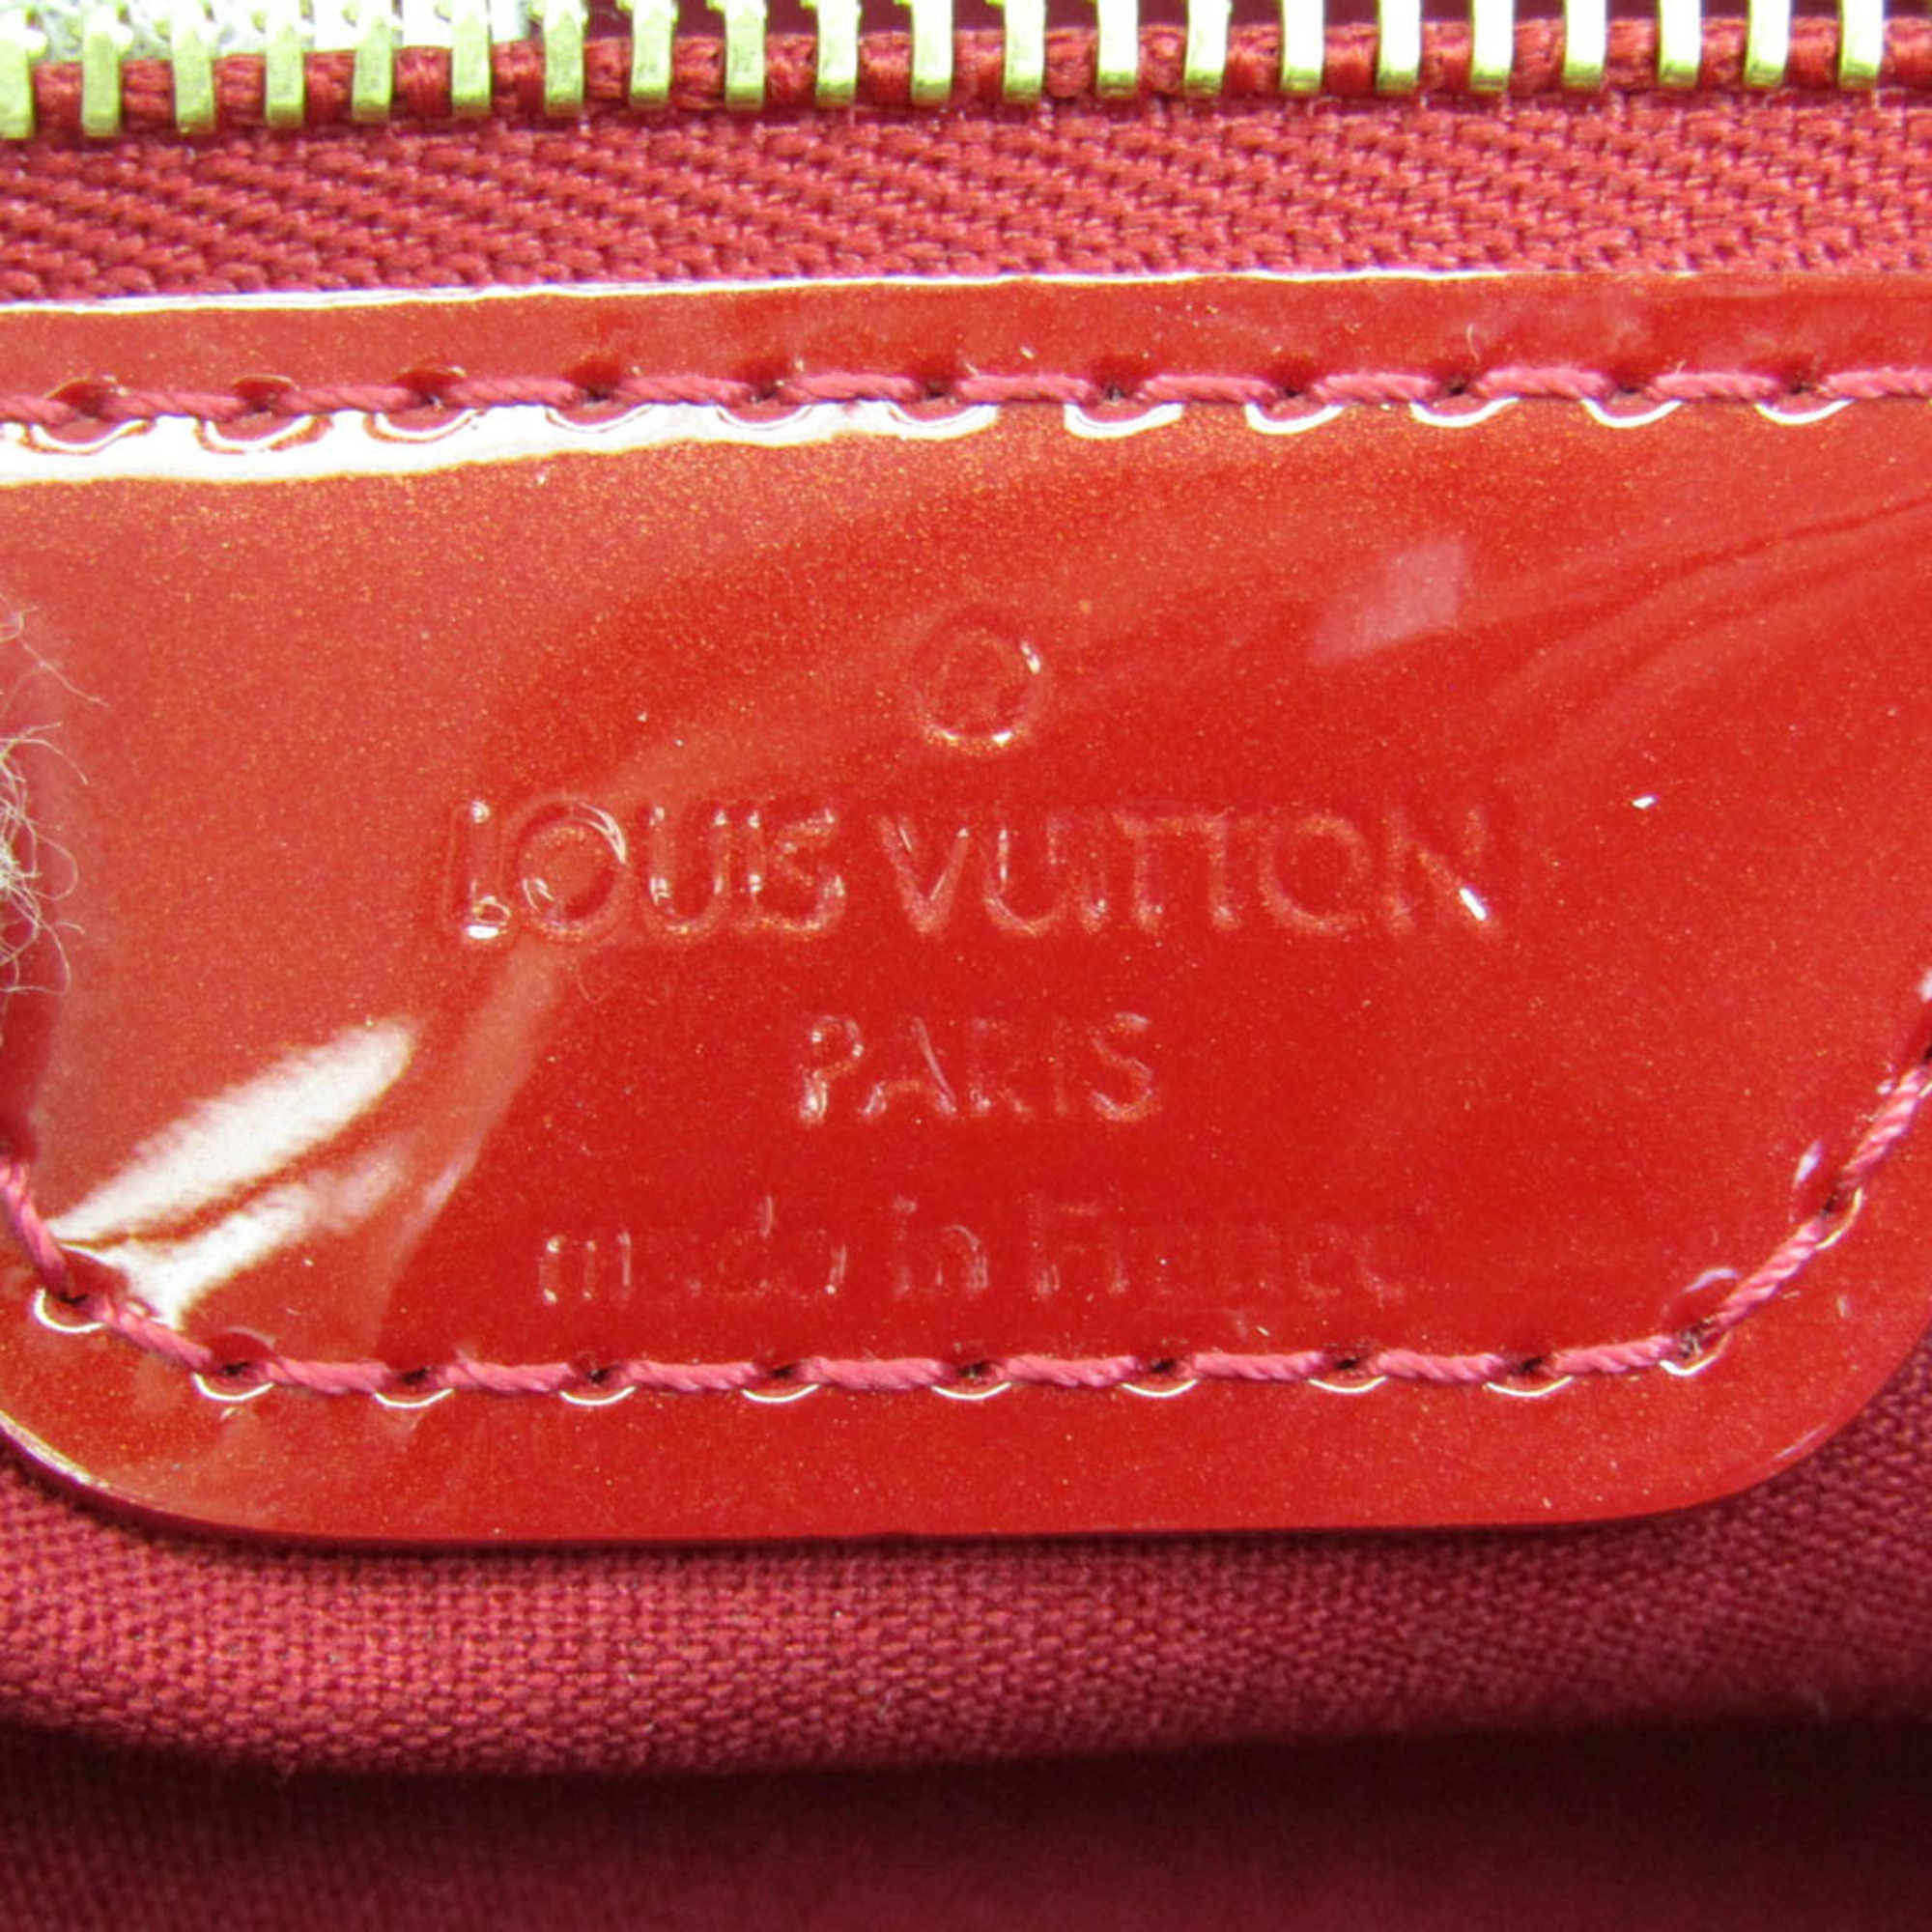 ルイ・ヴィトン(Louis Vuitton) モノグラムヴェルニ ウィルシャーPM M93642 レディース ハンドバッグ ポムダムール